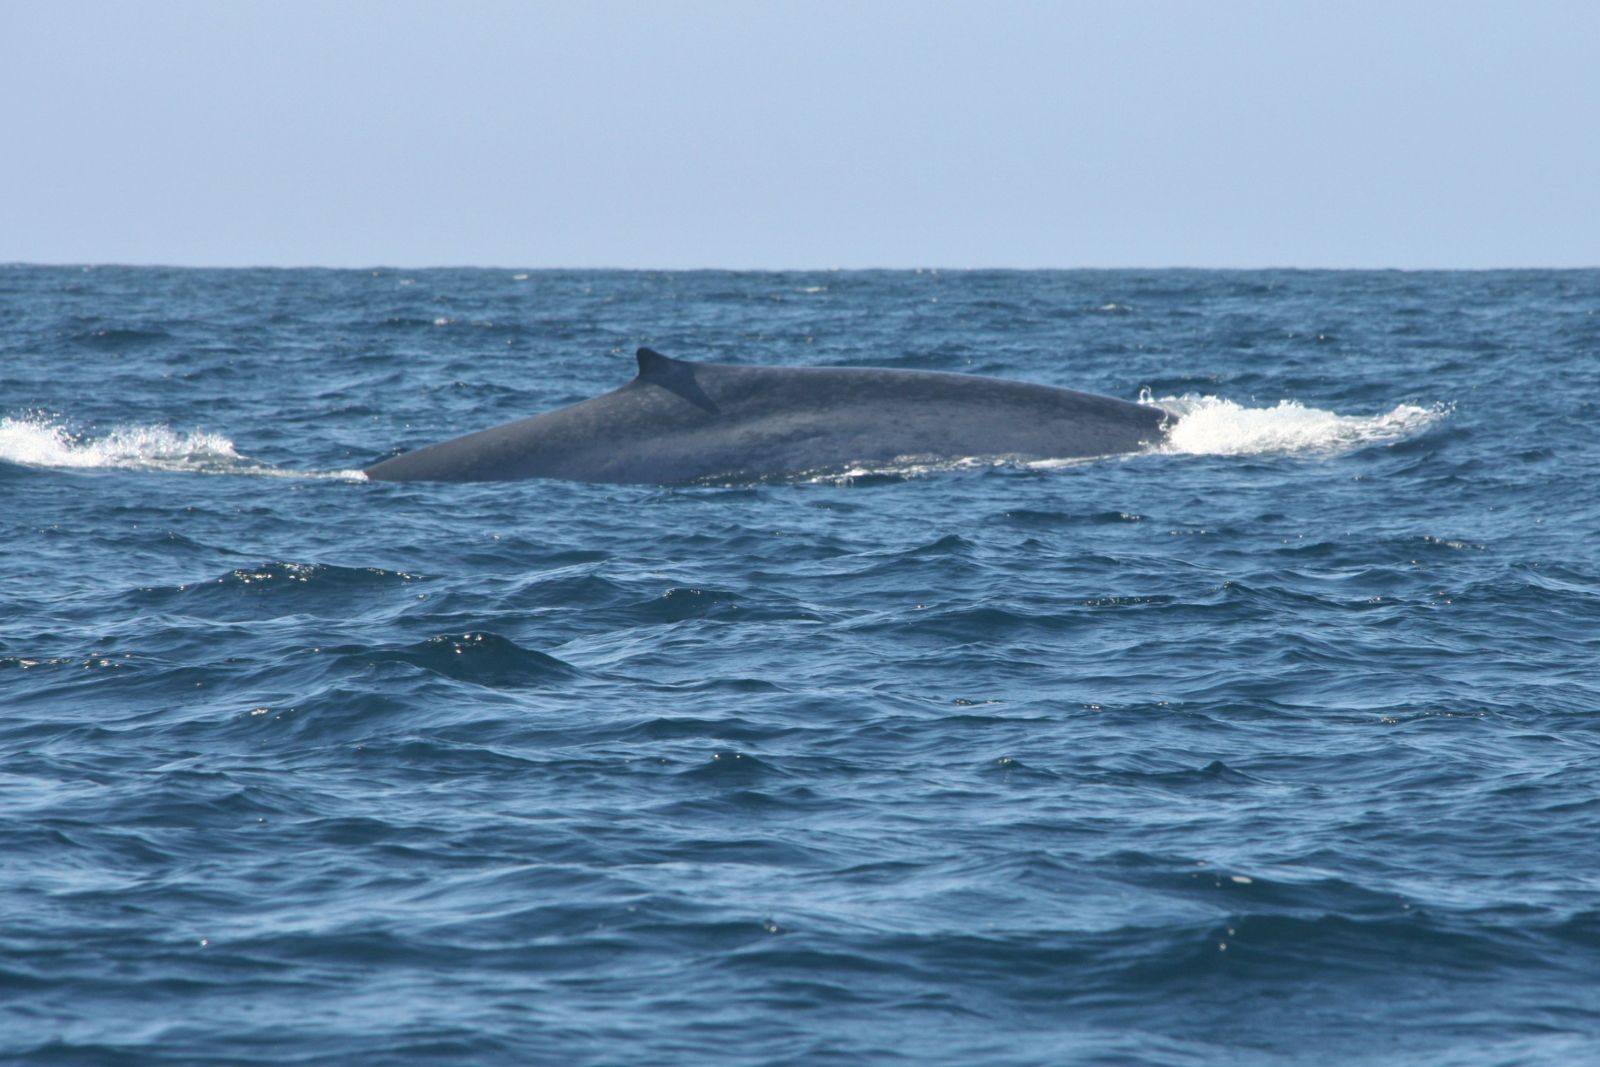 Blauwale kann man an der charakteristischen Zeichnung der Haut unterscheiden